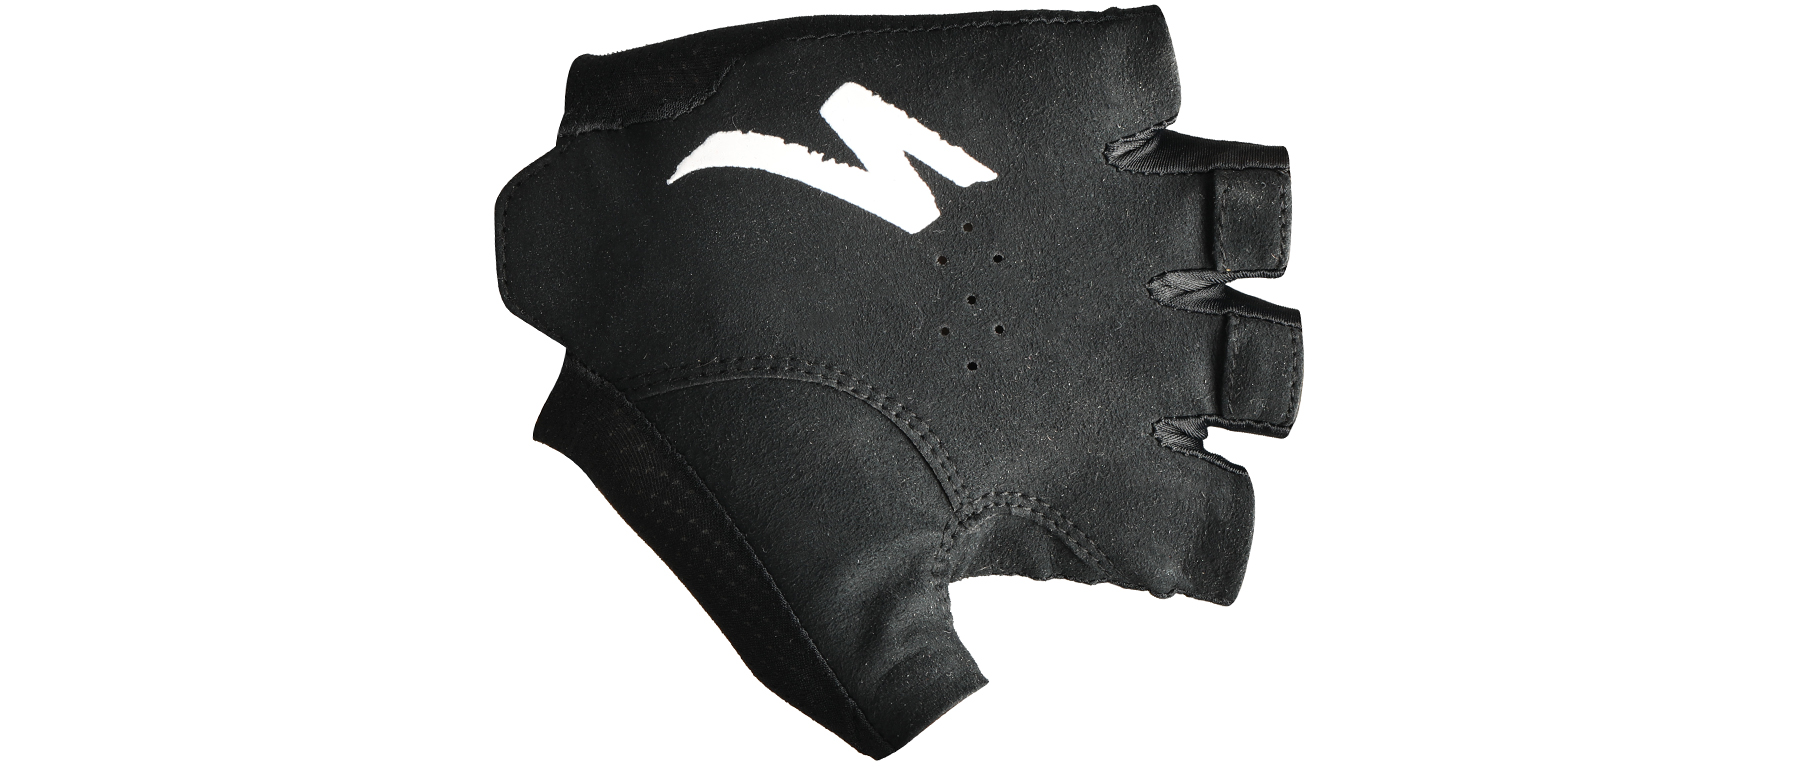 Specialized SL Pro Glove